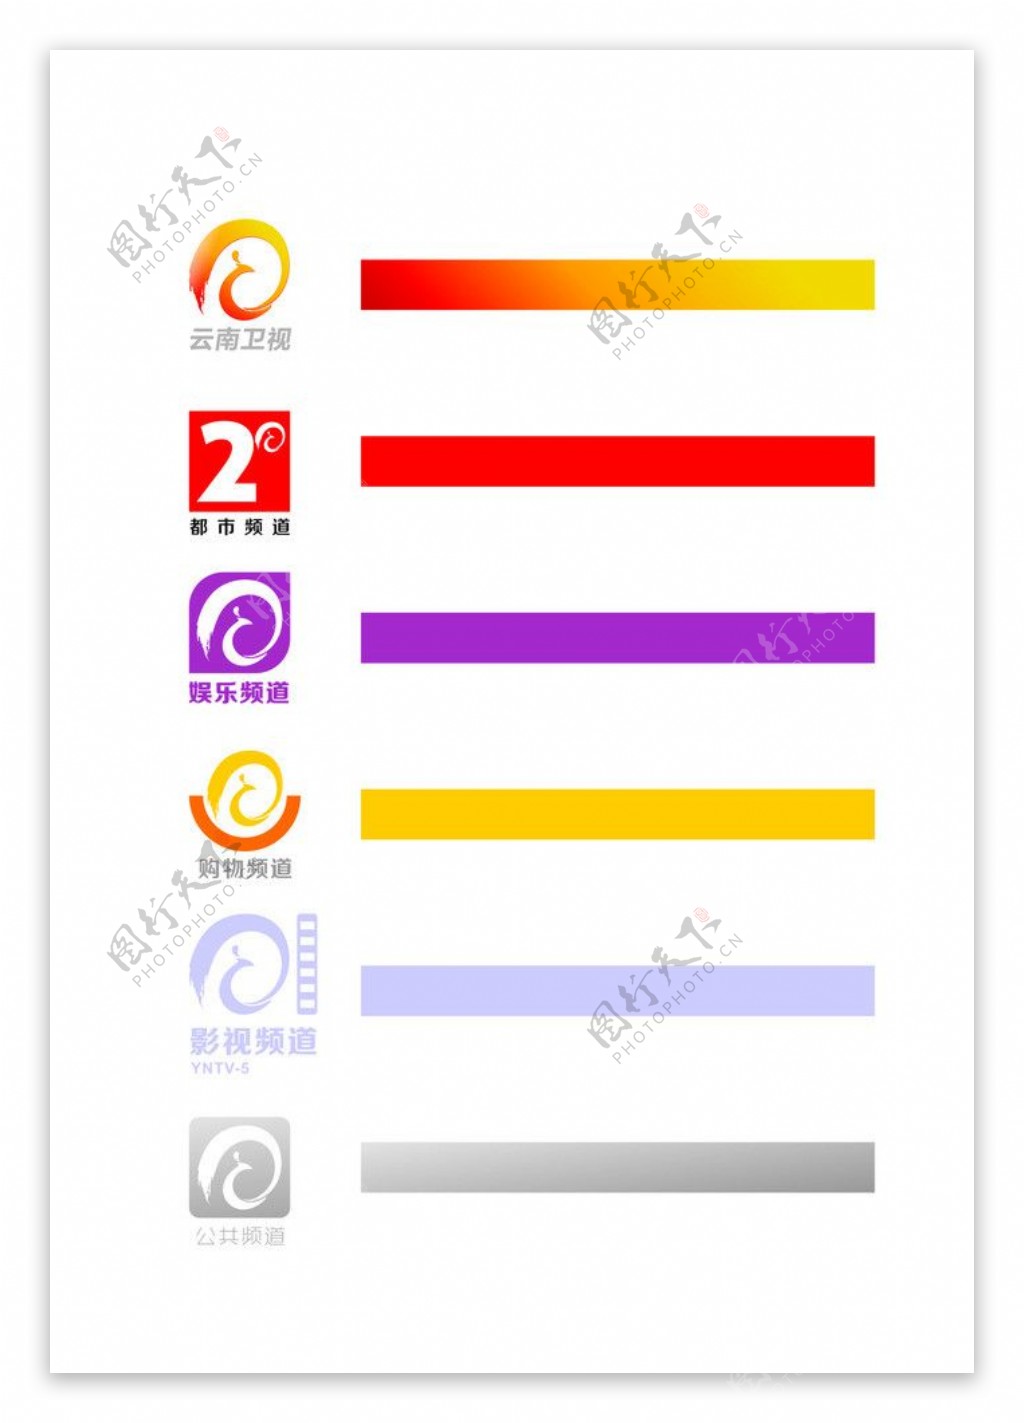 云南电视台6大频道标及代表色图片